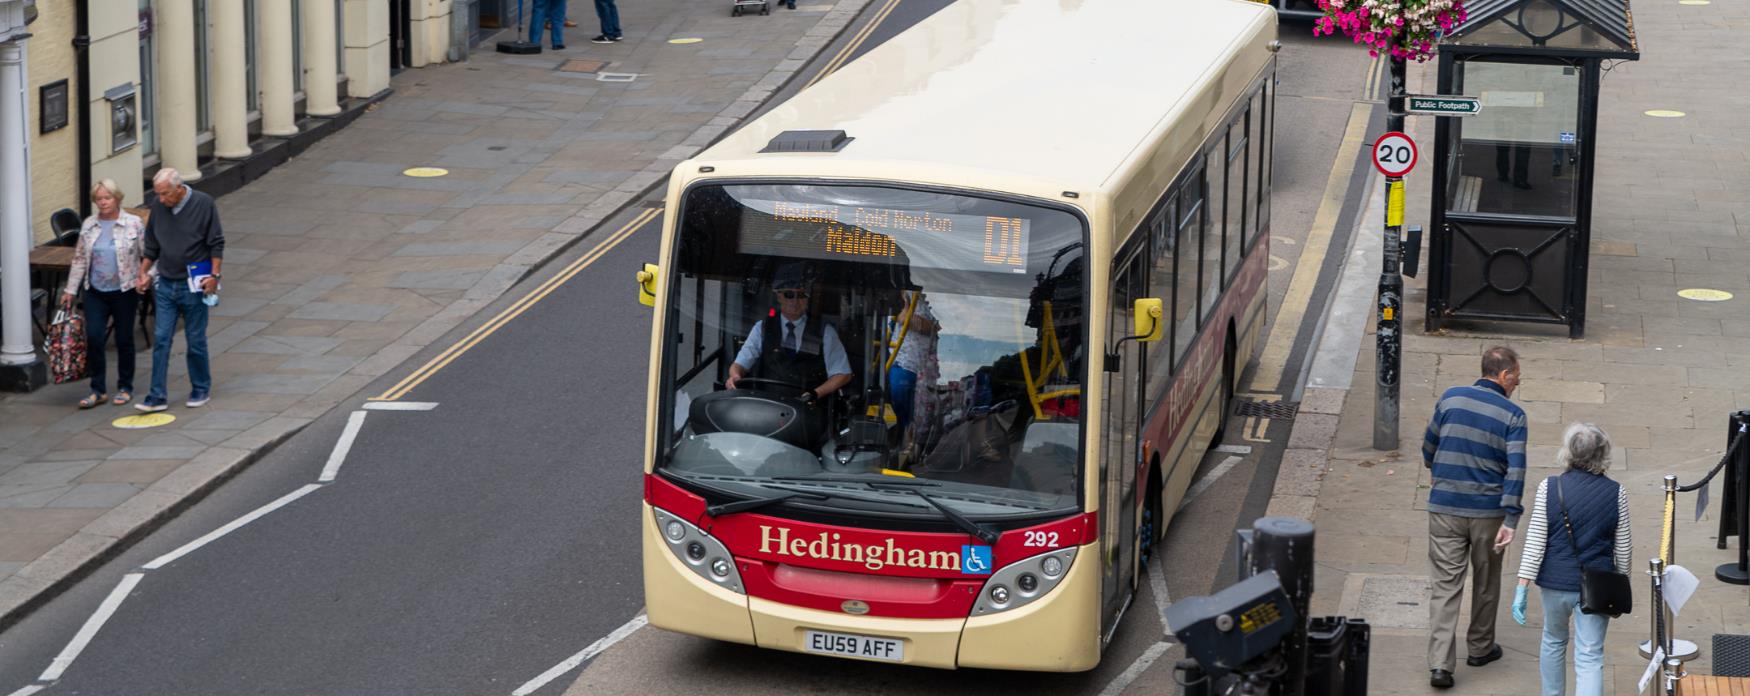 Bus picking up passengers in Maldon High Street